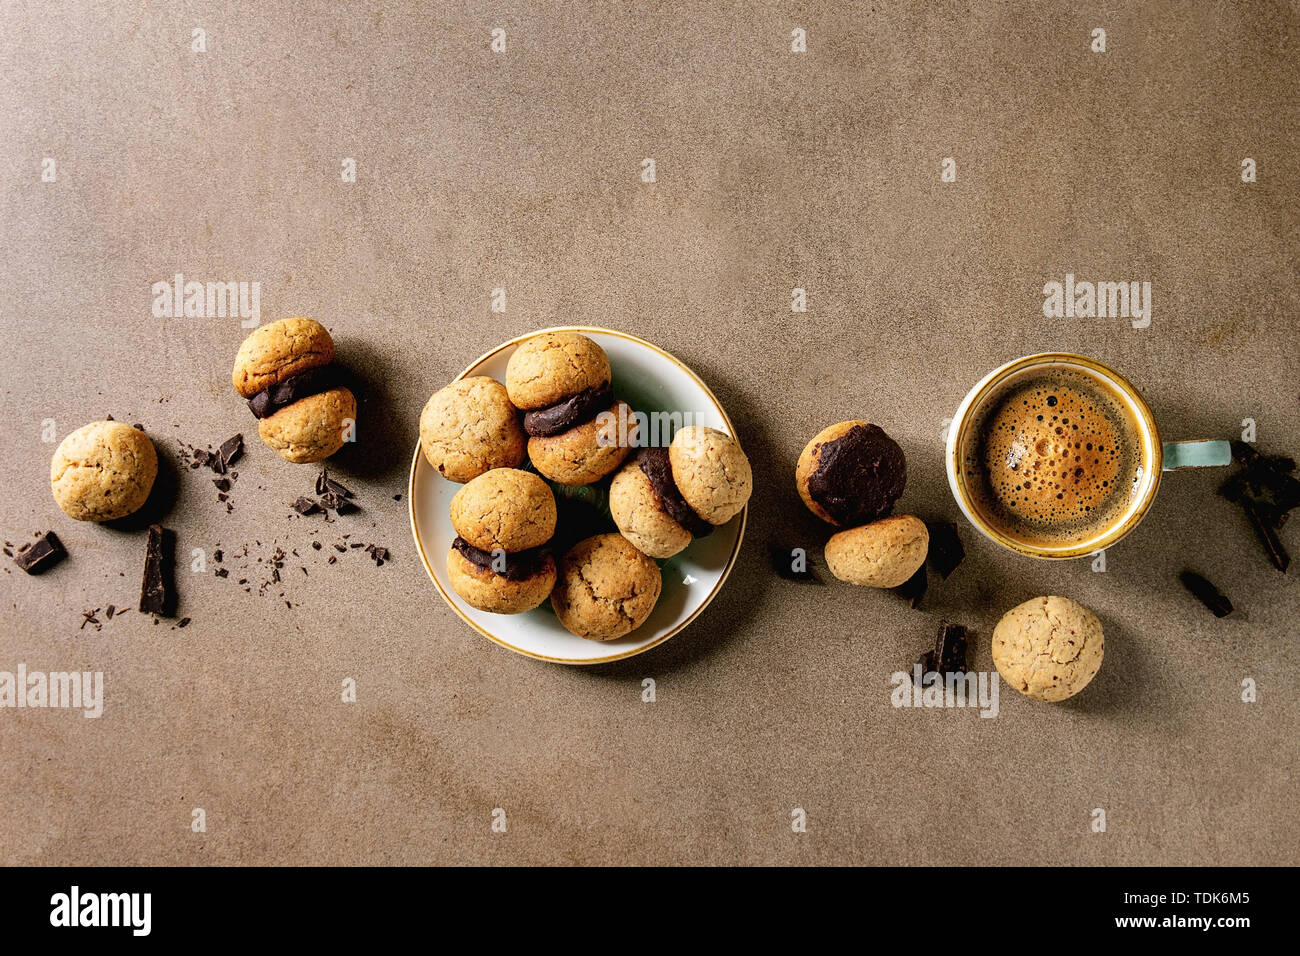 Baci di dama hausgemachte italienische Haselnuss Kekse Kekse mit Schokolade in Keramik Platte mit Tasse Espresso Kaffee über braune Textur ba serviert. Stockfoto